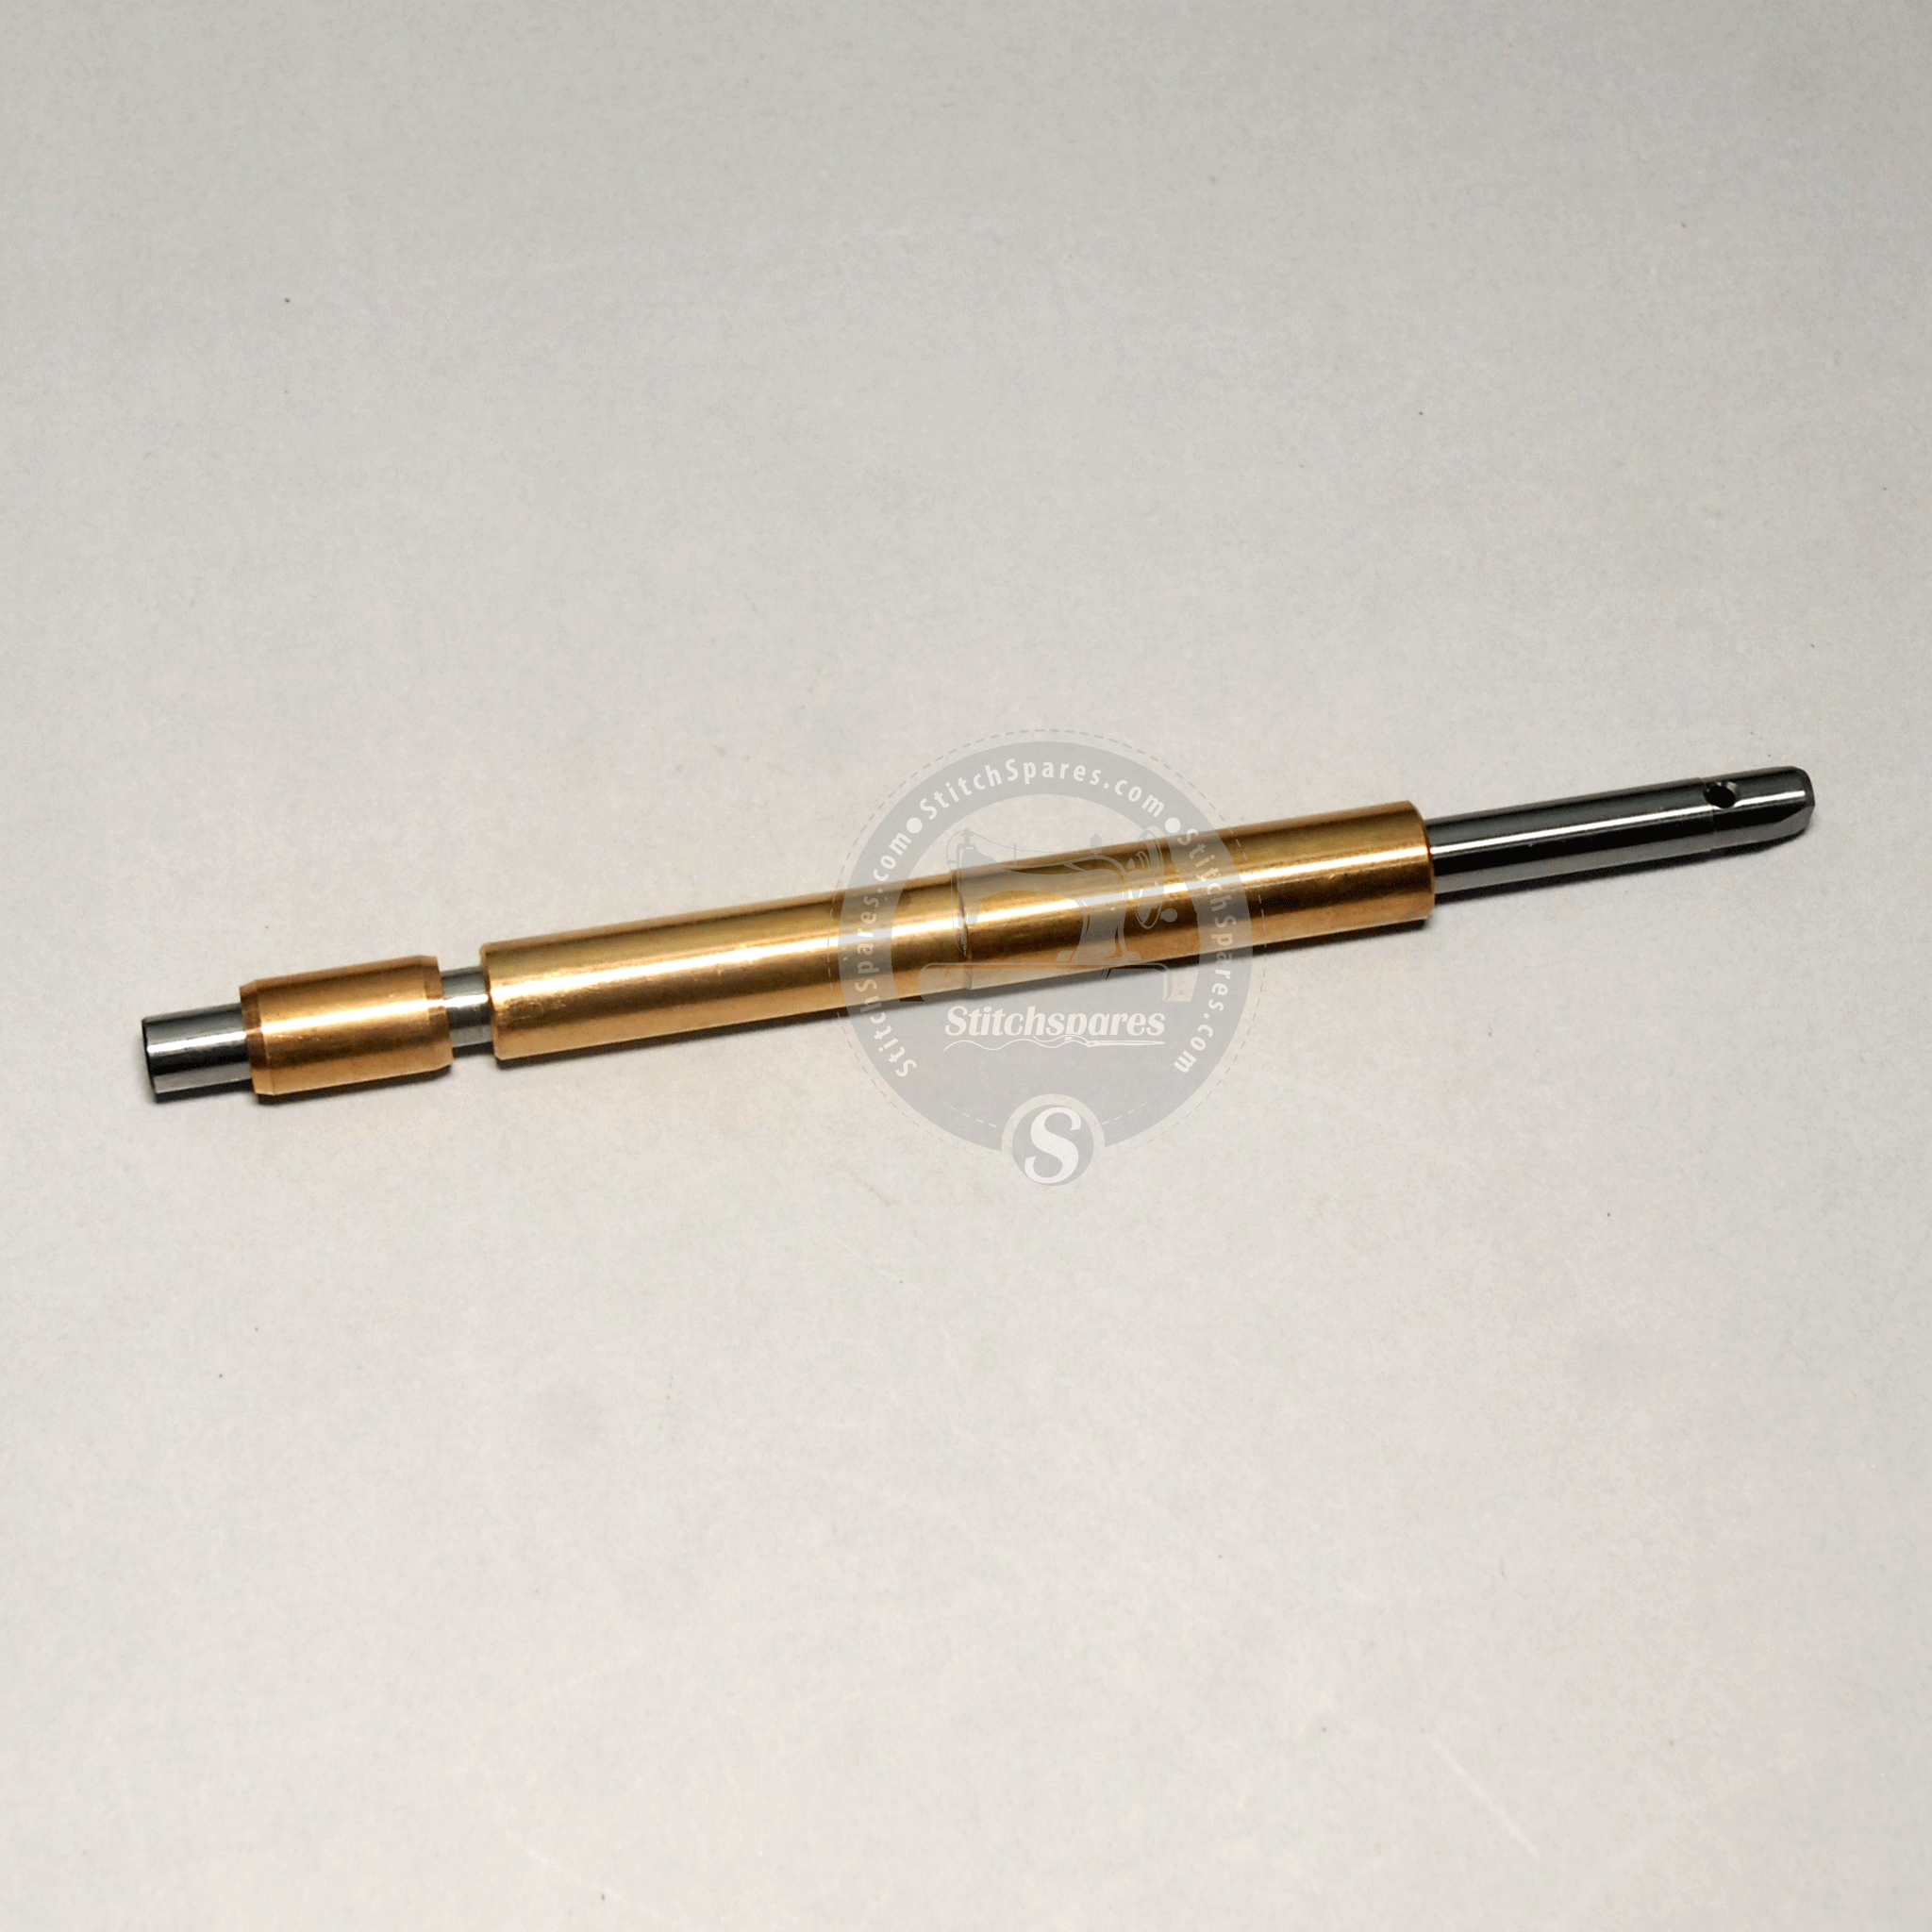 Juego de bujes de barra de aguja para JUKI LK-1900 /1900A /1900B (#400-10573 / #400-10441 / #400-10442) Repuestos para máquina de coser computarizada Bartack